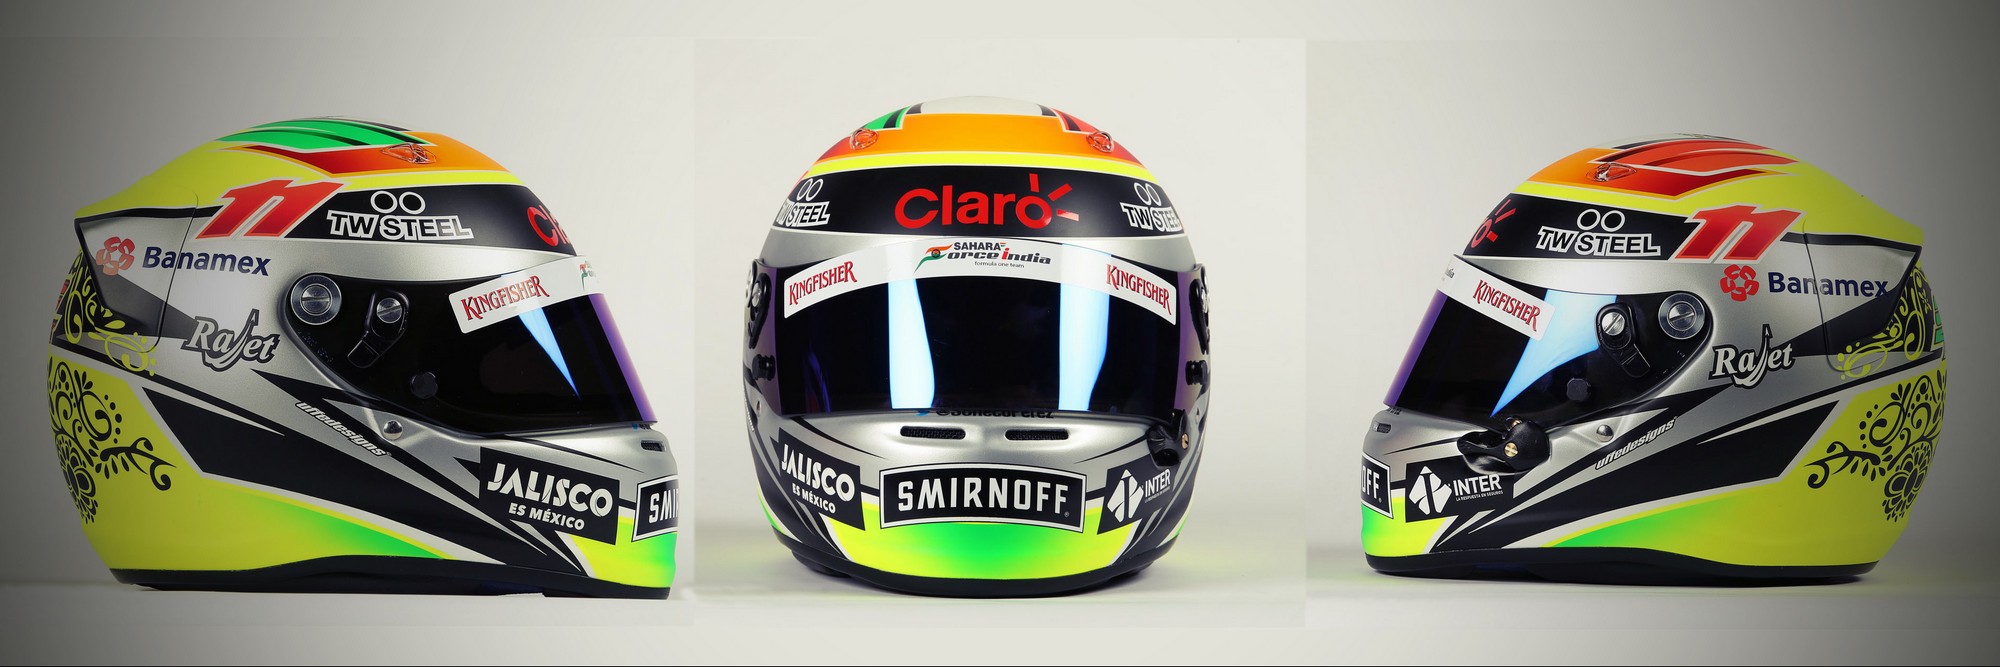 Шлем Серхио Переса на сезон 2015 года | 2015 helmet of Sergio Perez